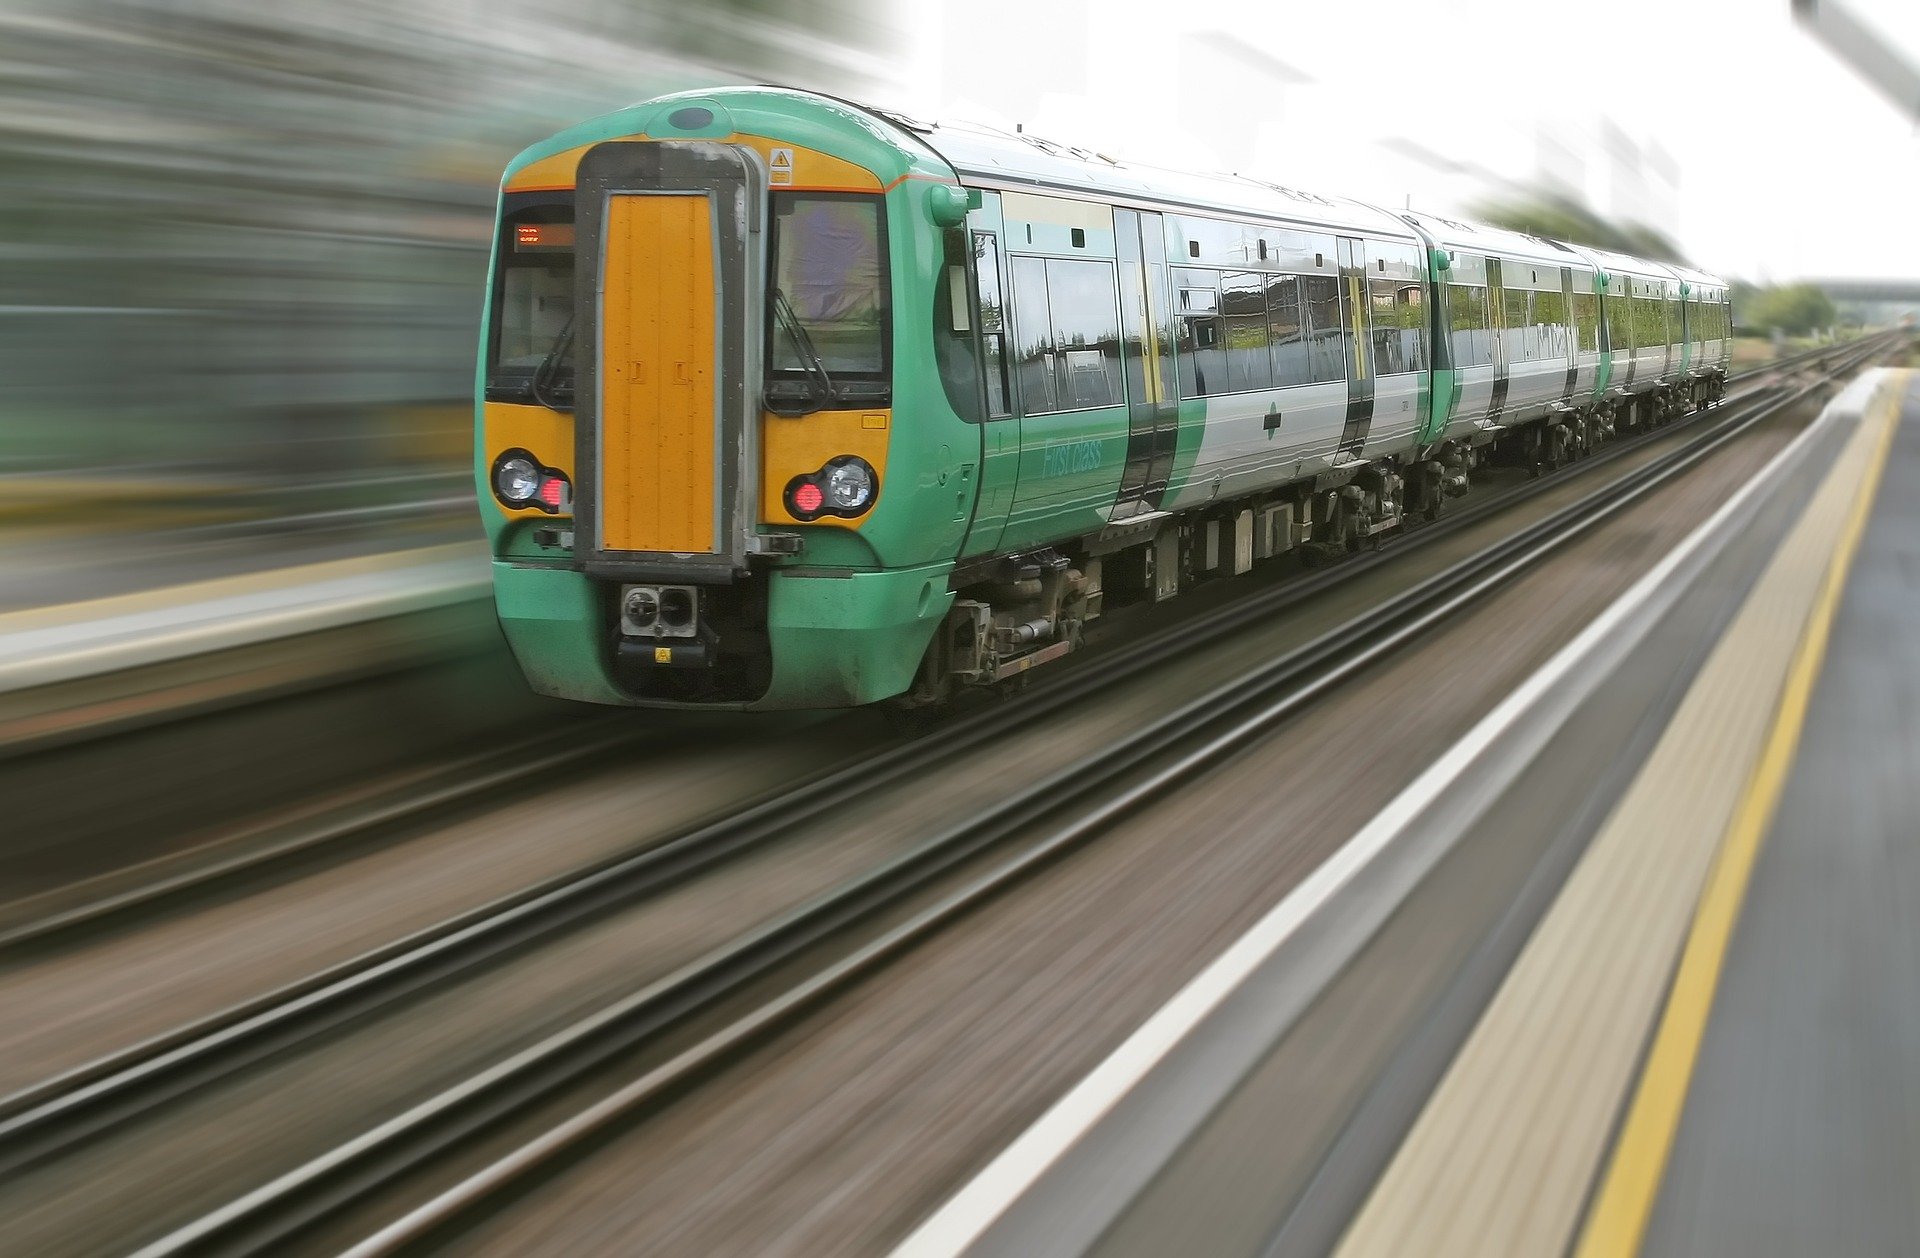 NEWS | Government announces delay to rail fare rises until March 2021